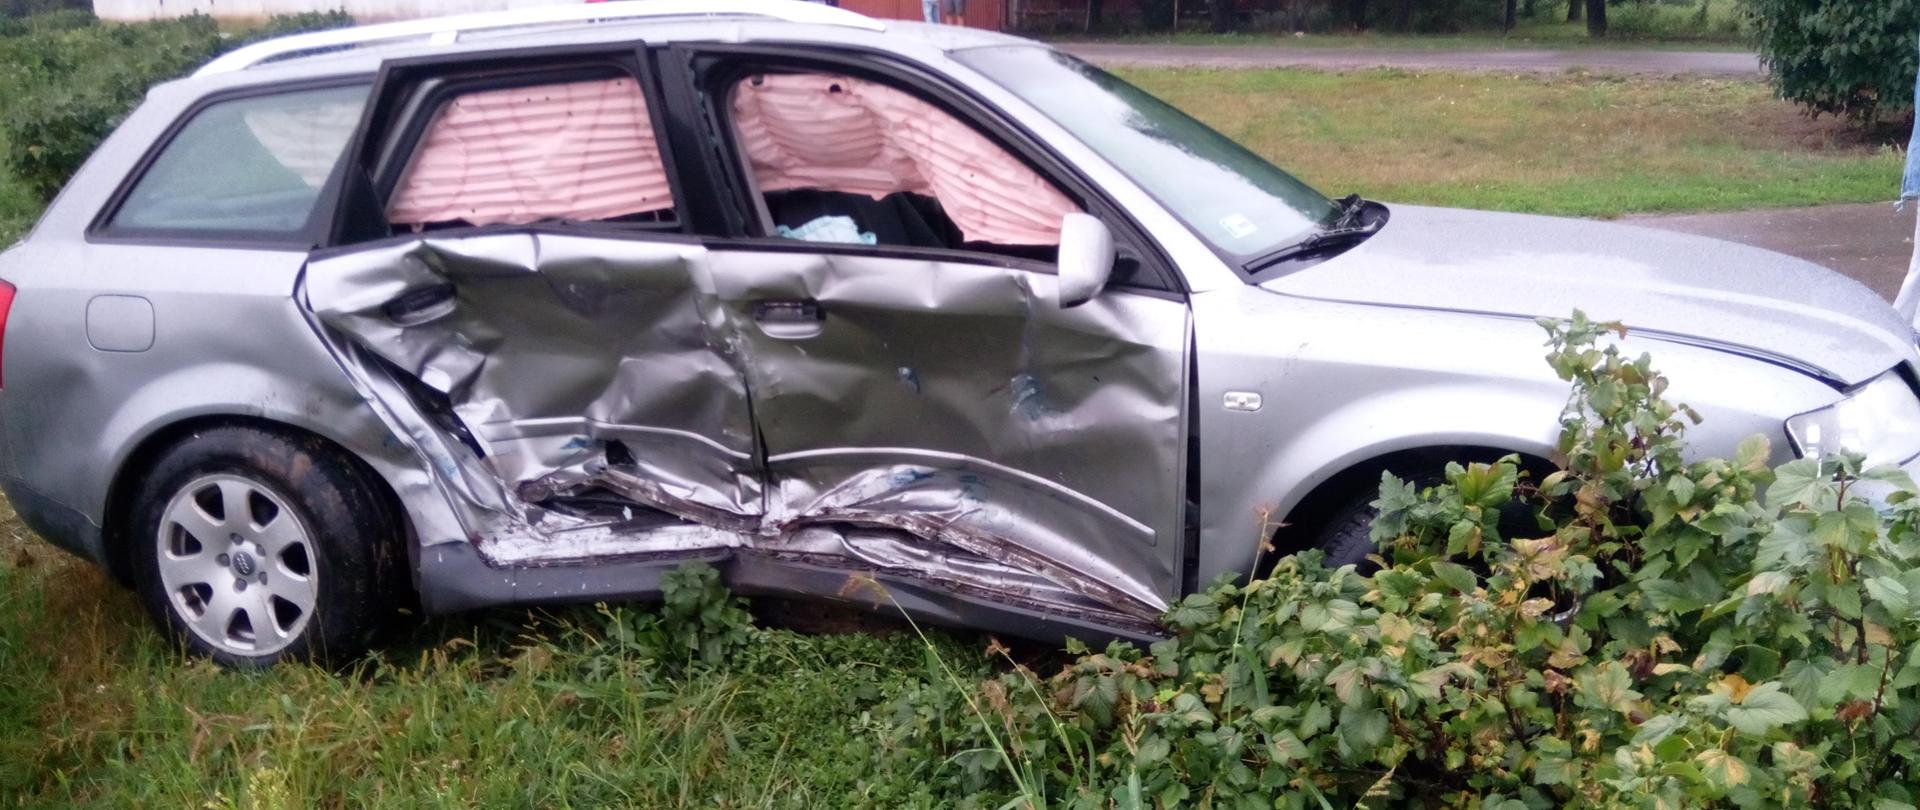 Zdjęcie przedstawia uszkodzony samochód osobowy stojący na poboczu drogi.